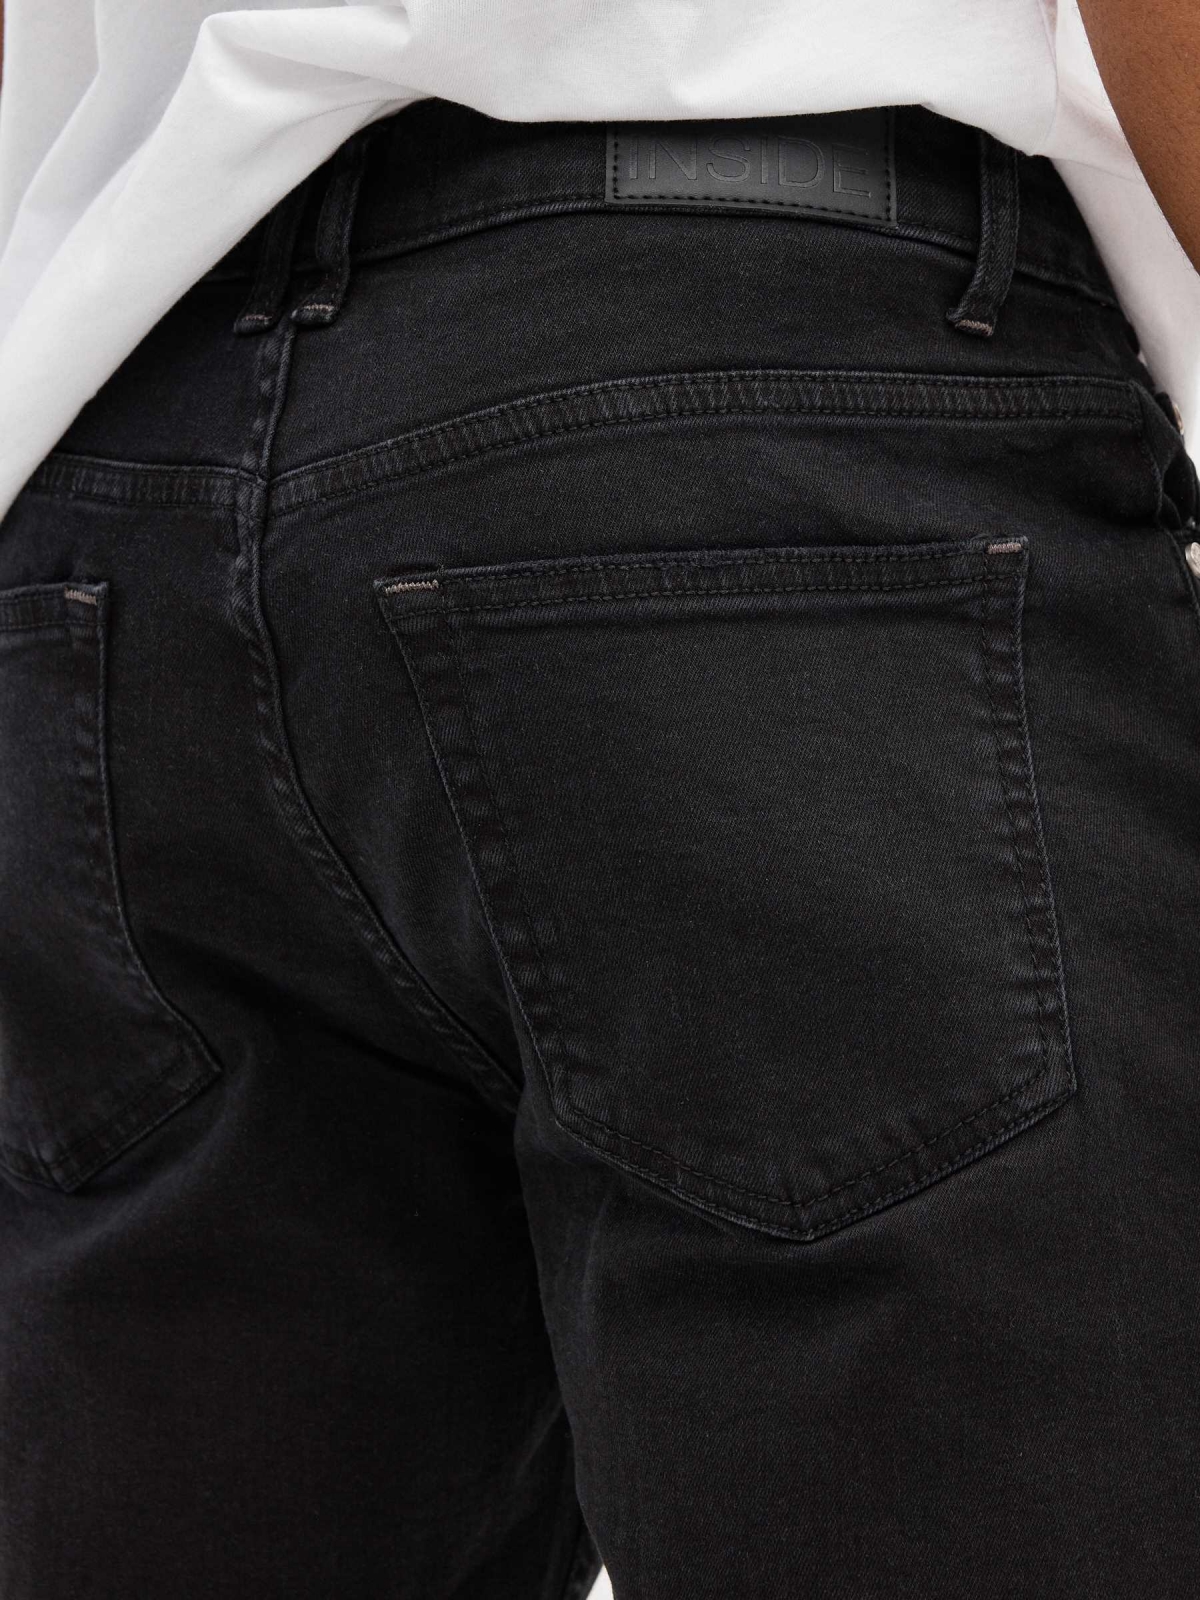 Calção de ganga Slim Bermudas Shorts preto preto vista detalhe